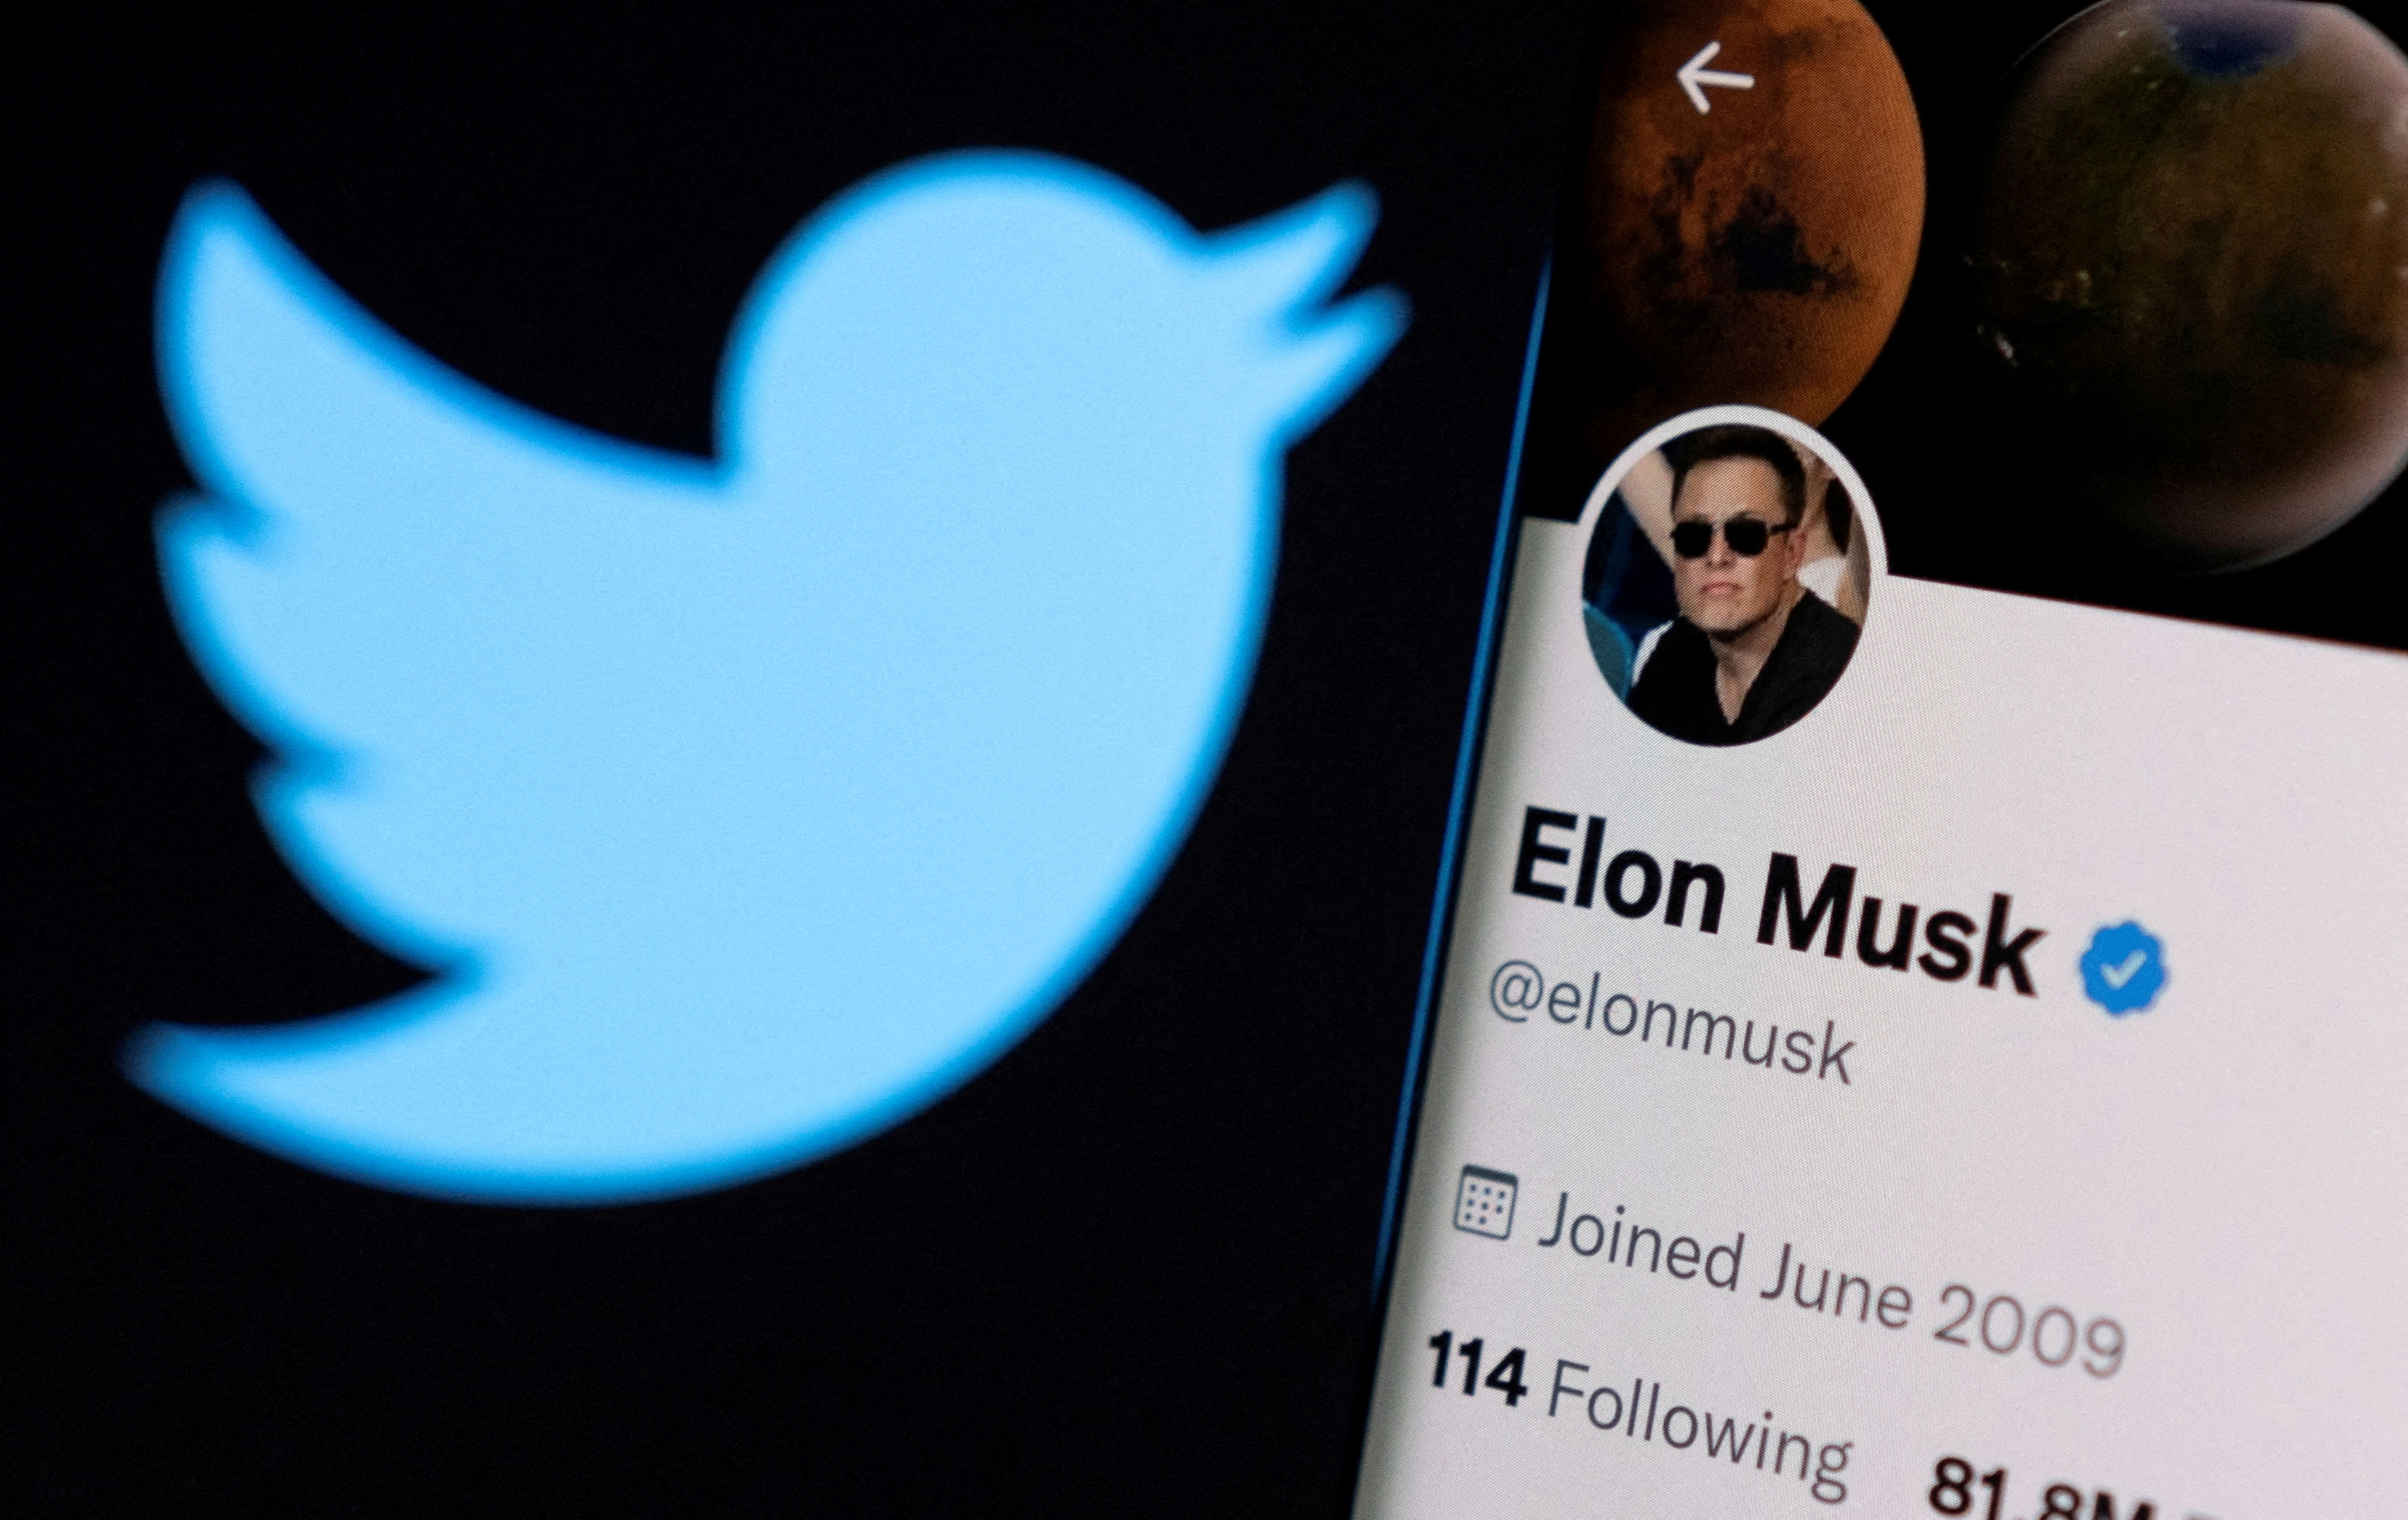 Le rachat par Elon Musk risque d'aggraver le problème de désinformation de Twitter